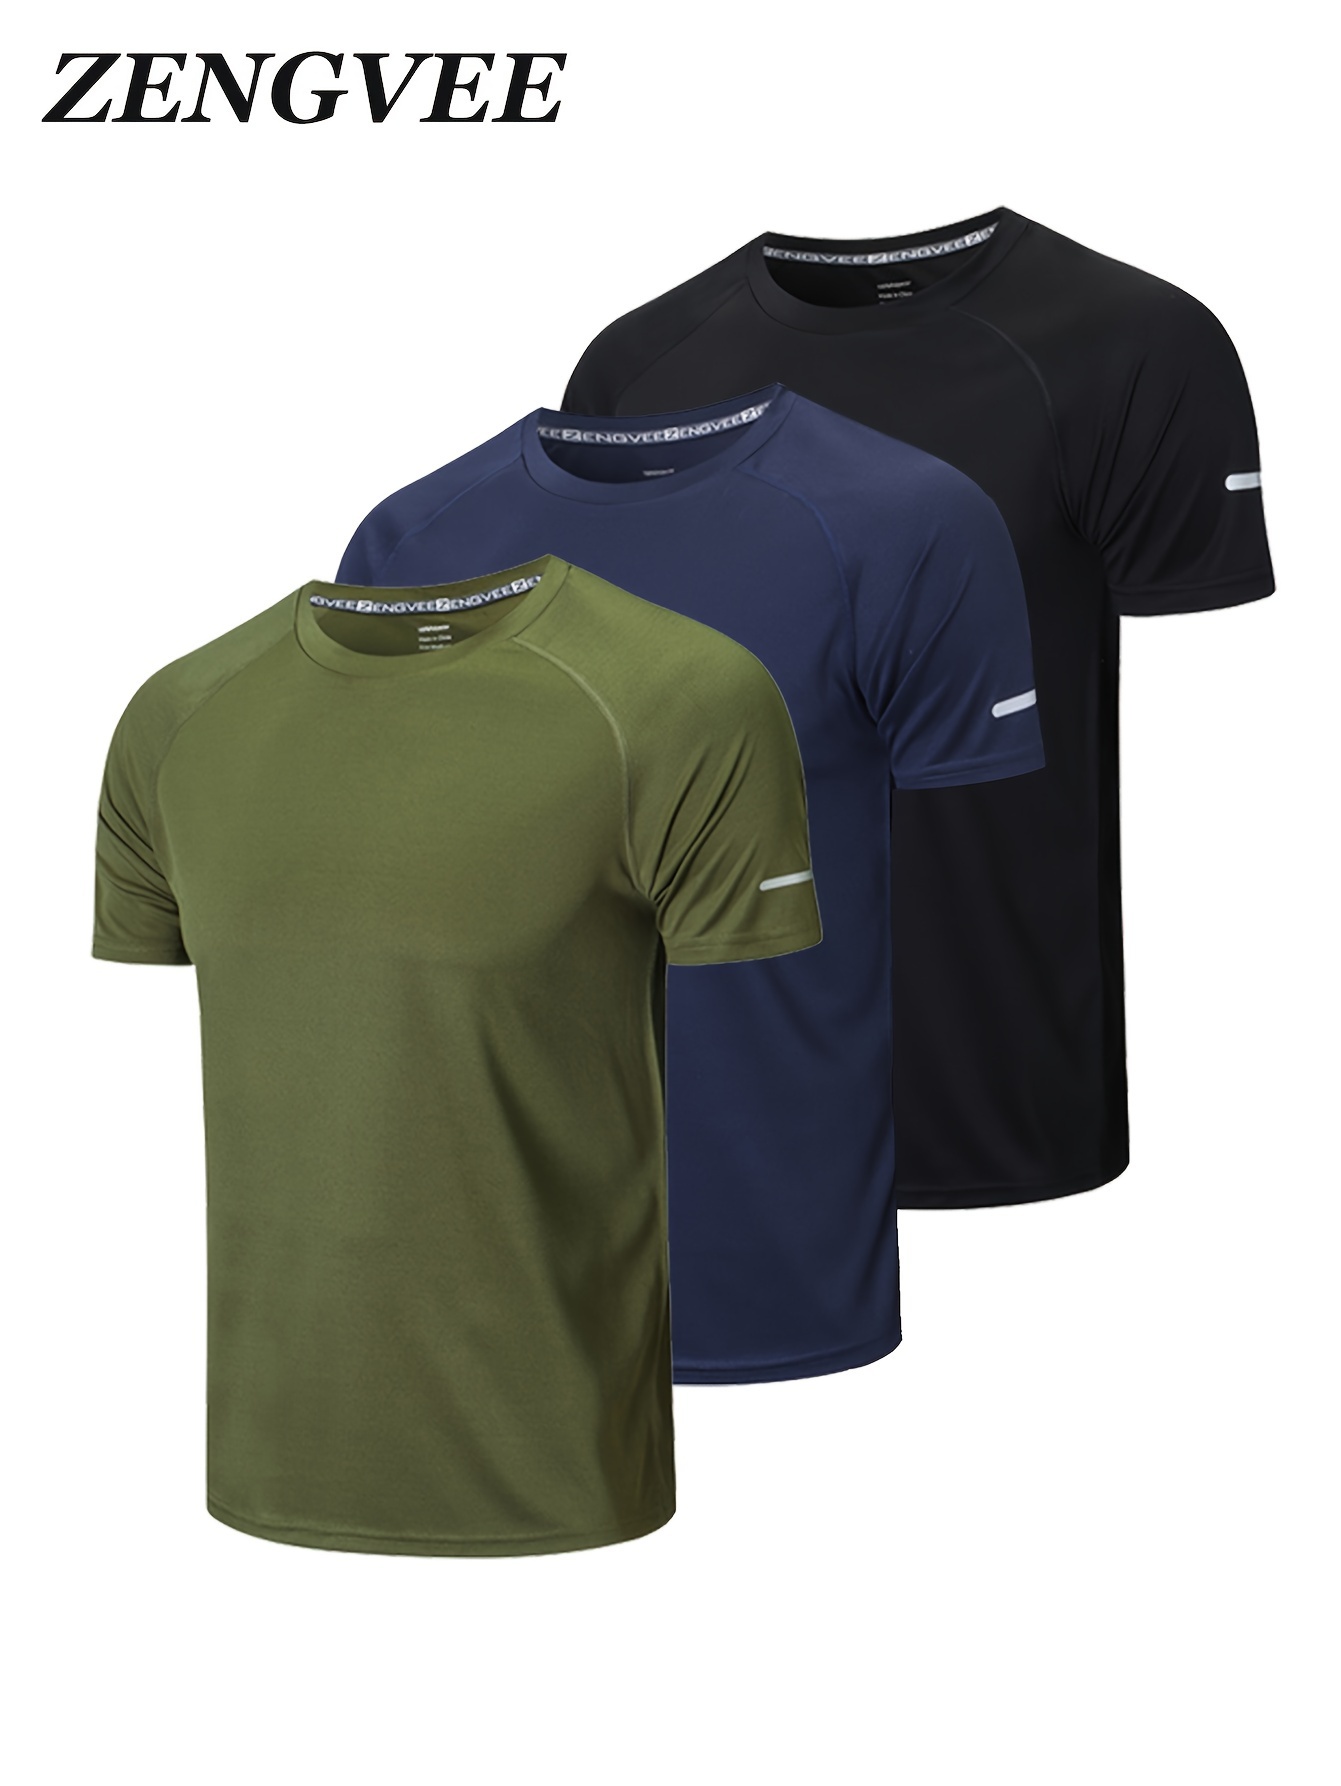 Jacked T-shirt, Mens Workout Shirt, Mens Gym Shirt, Mens Fitness Tee,  Motivational Shirt, Bodybuilding Shirt, Mens Gym Clothing, Workout Tee -   Canada